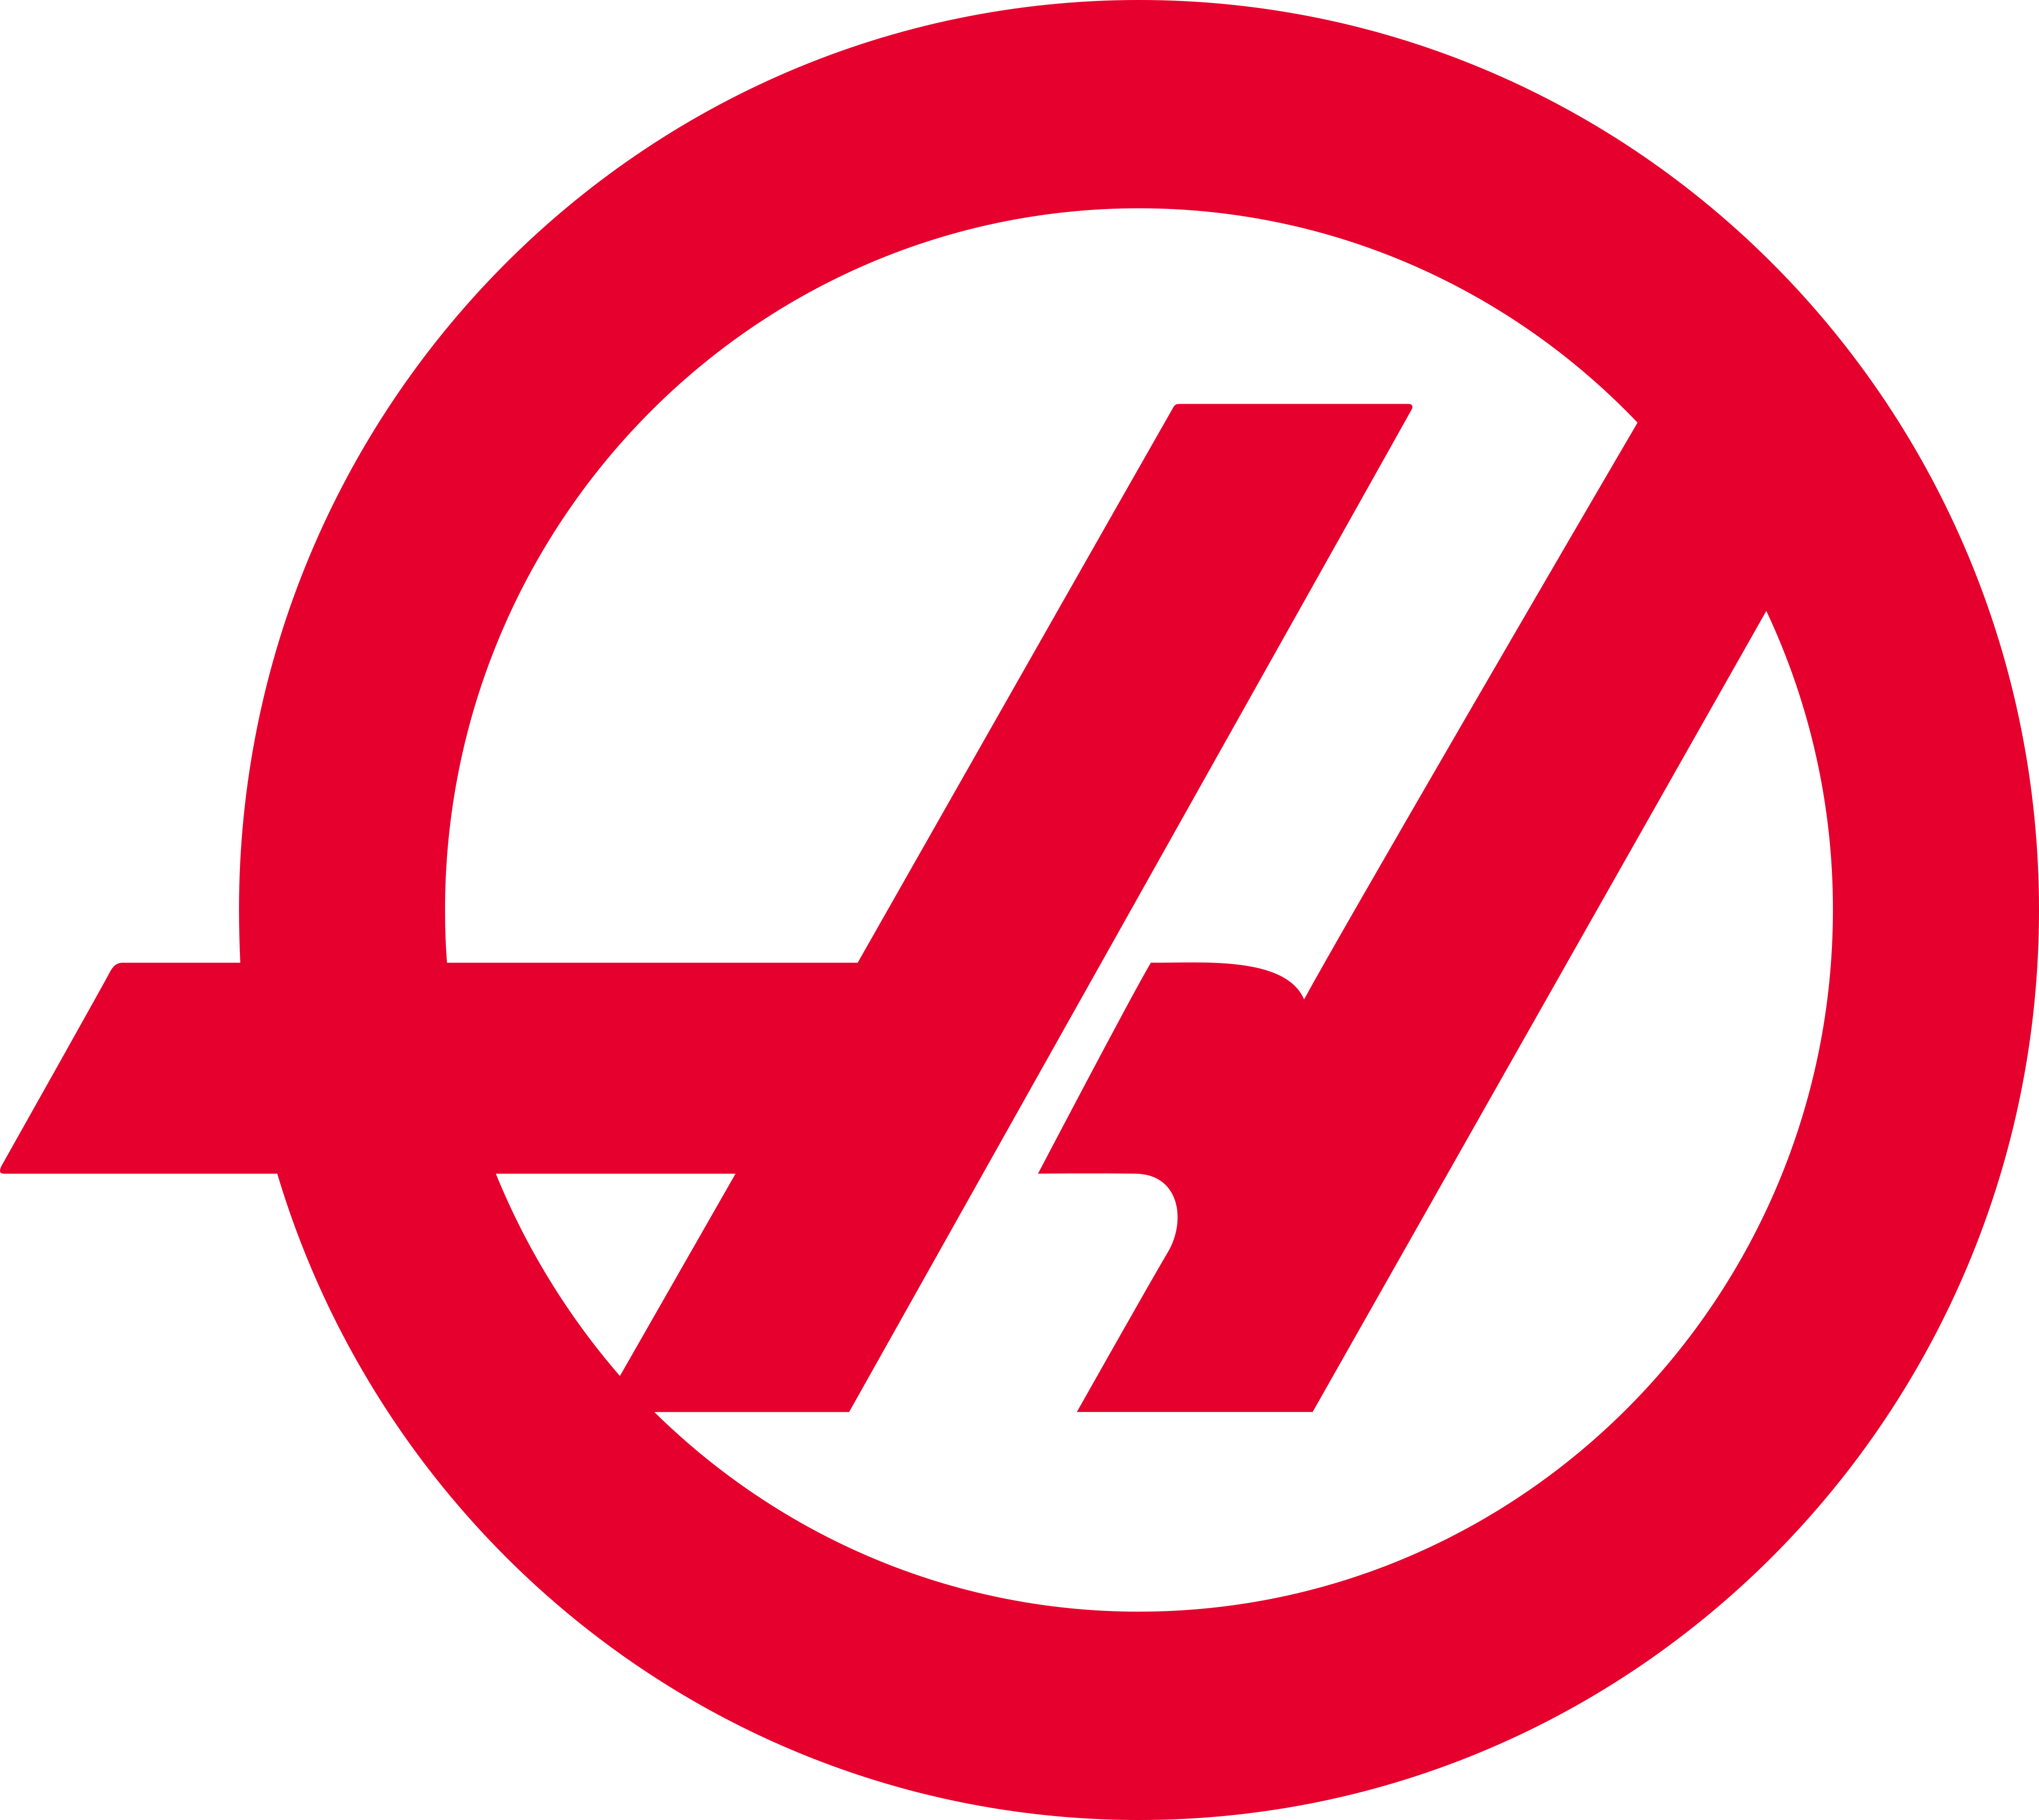 haas f1 team logo 1 - Haas F1 Team Logo